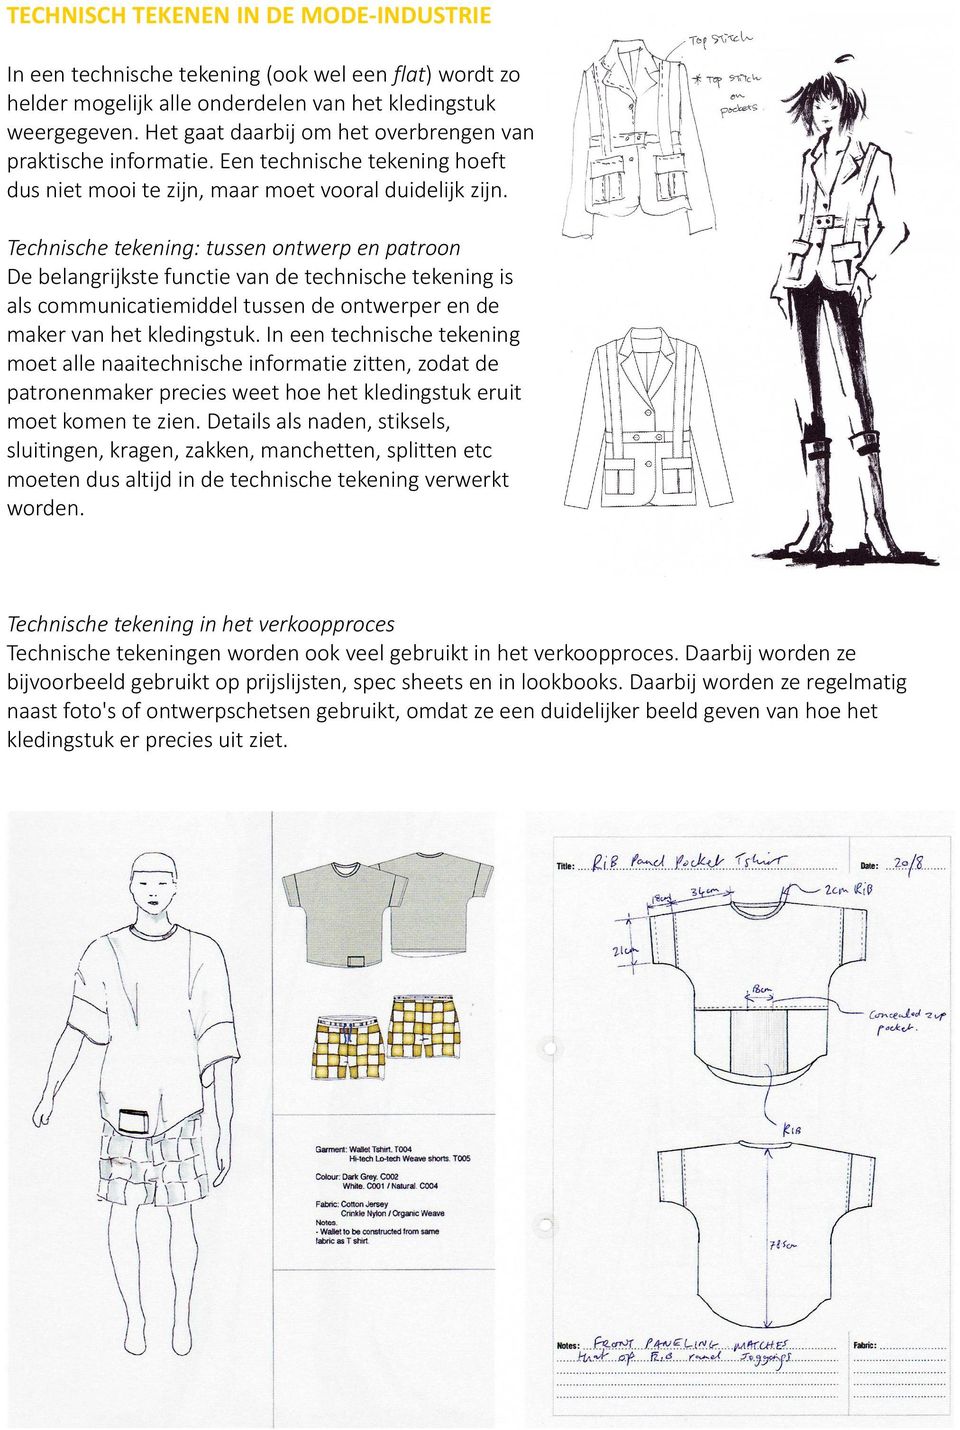 Technische tekening: tussen ontwerp en patroon De belangrijkste functie van de technische tekening is als communicatiemiddel tussen de ontwerper en de maker van het kledingstuk.